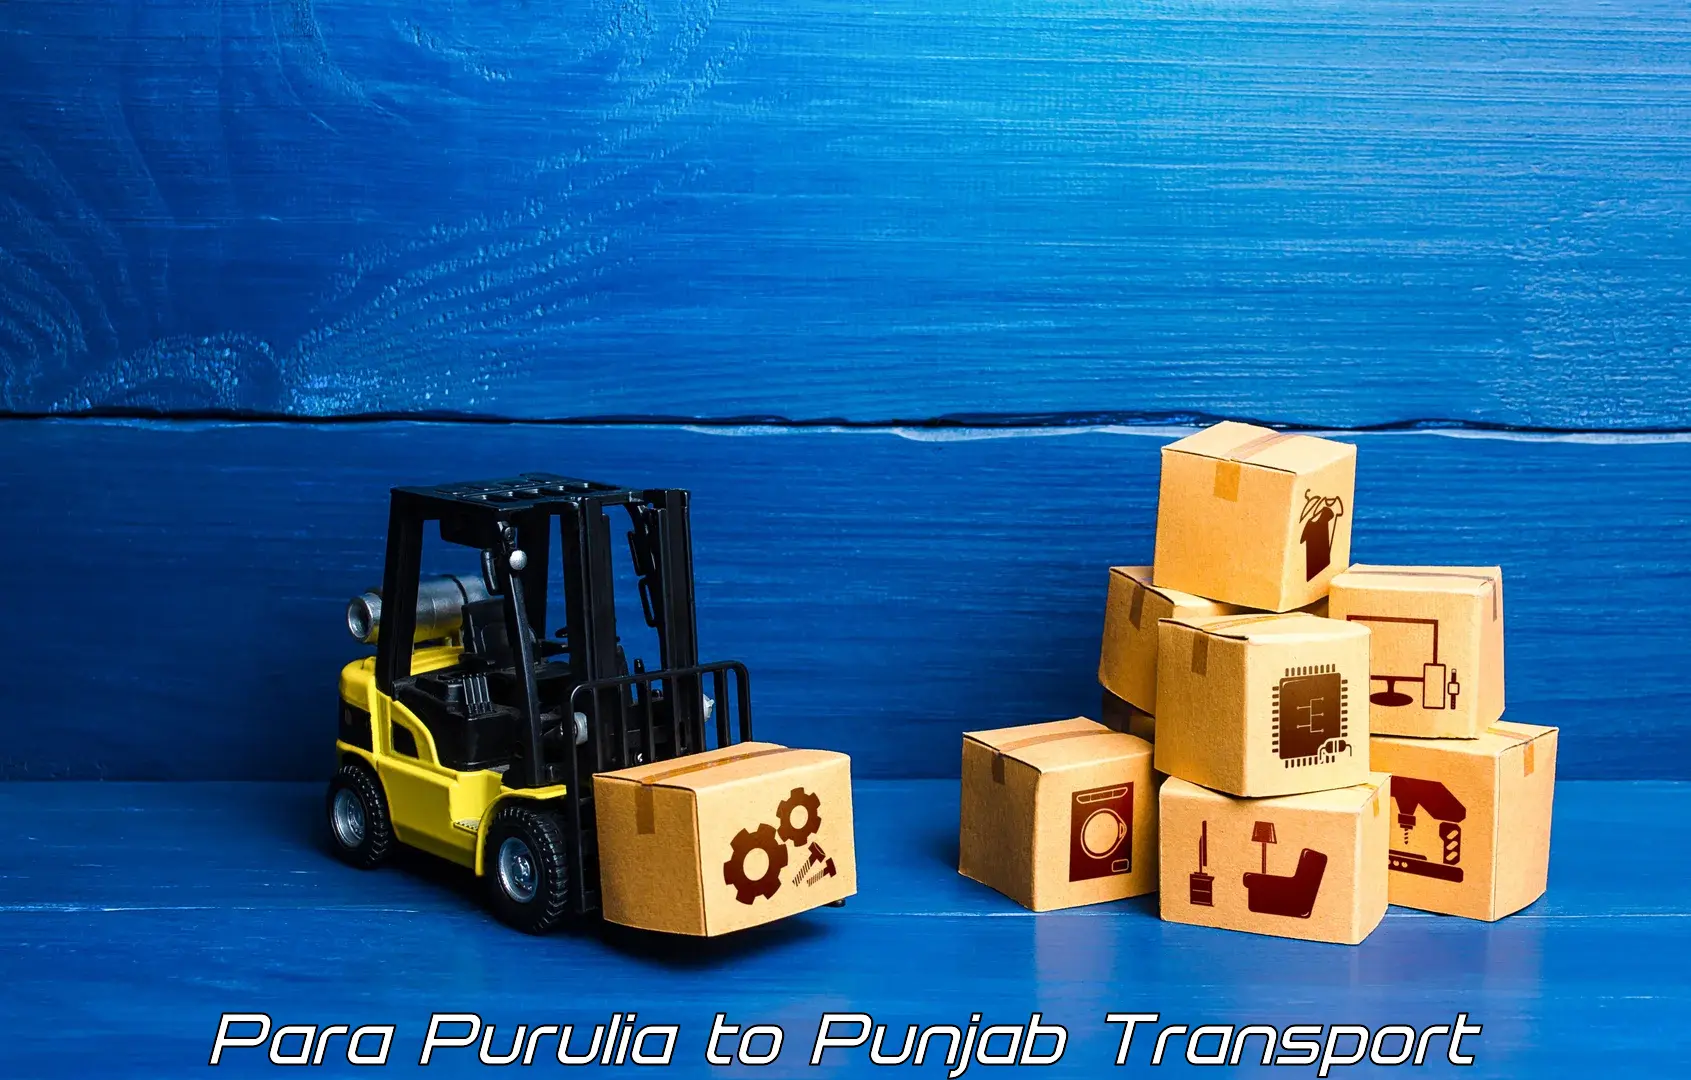 Lorry transport service Para Purulia to Hoshiarpur